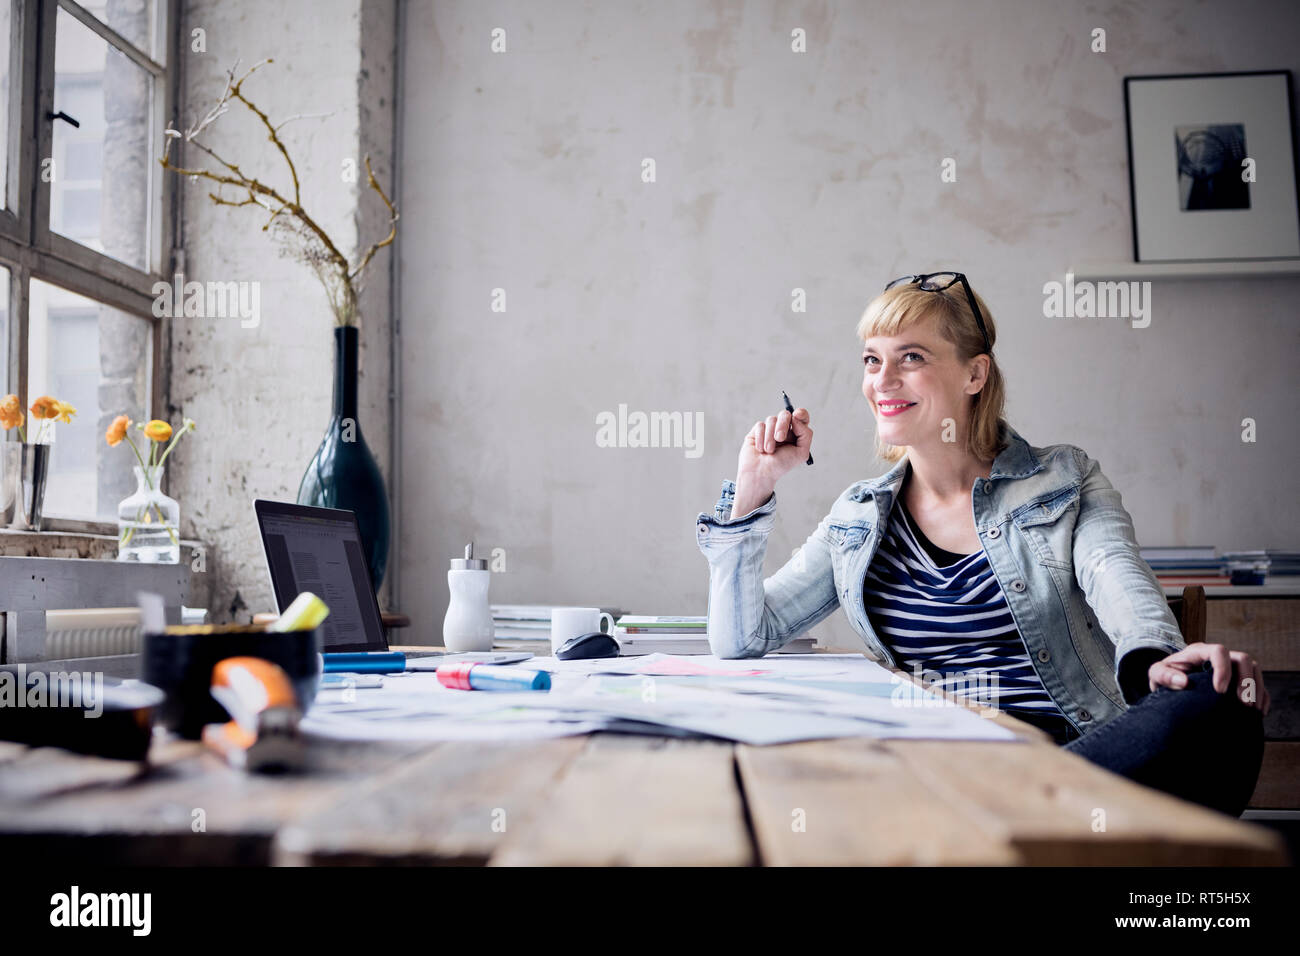 Ritratto di ridere donna seduta alla scrivania in un loft Foto Stock